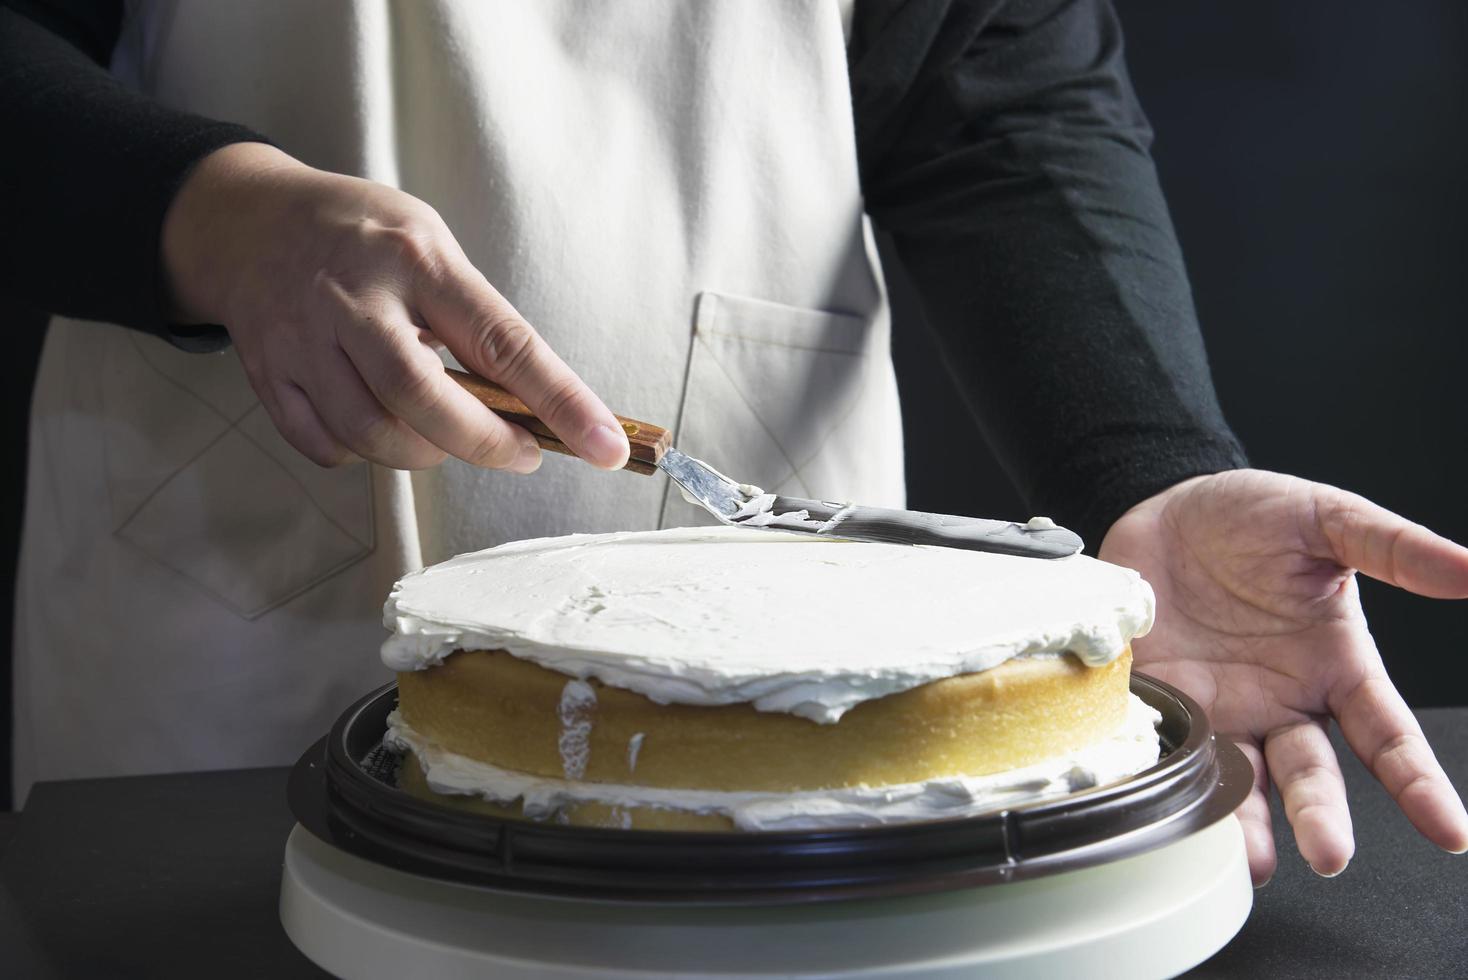 señora haciendo pastel poniendo crema con espátula - concepto de cocina de panadería casera foto